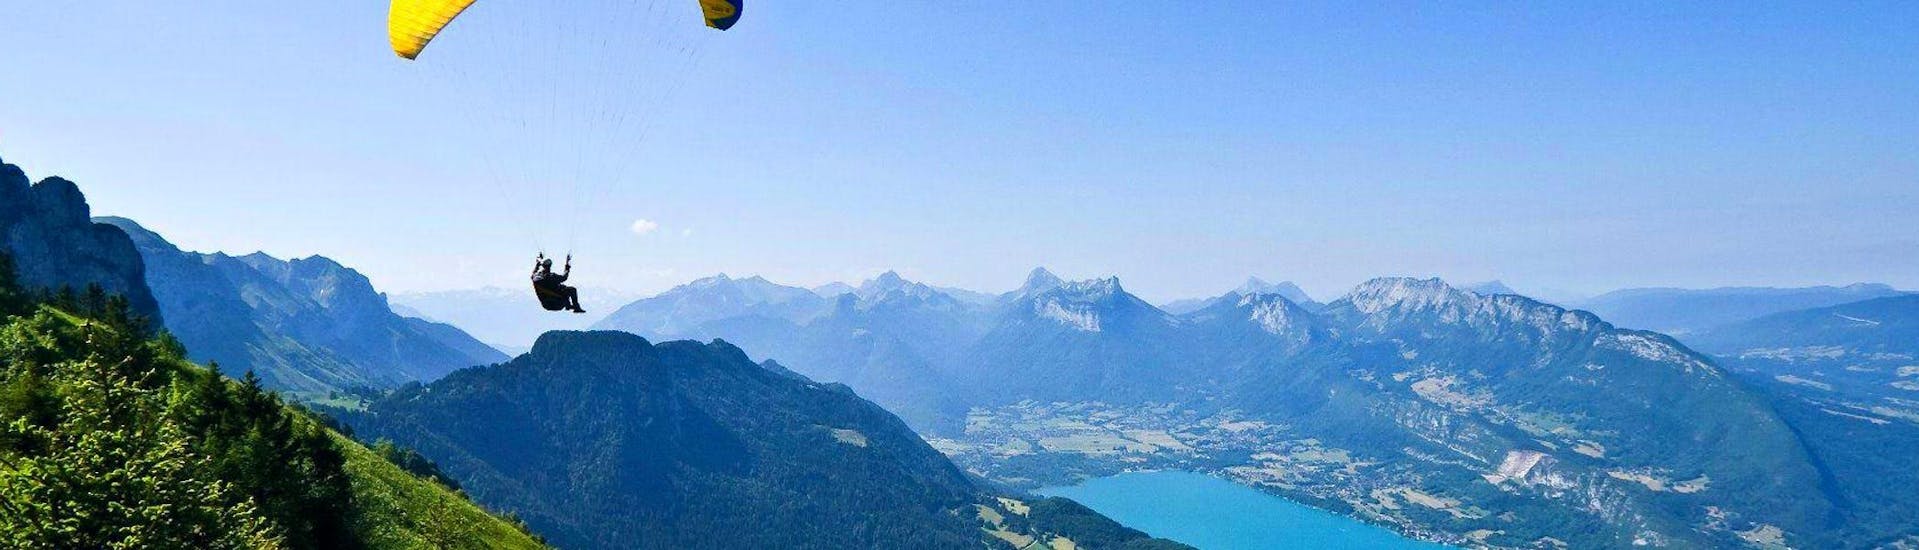 Un homme est en train de voler durant Parapente Biplace au Lac d'Annecy - Découverte avec Flyeo.